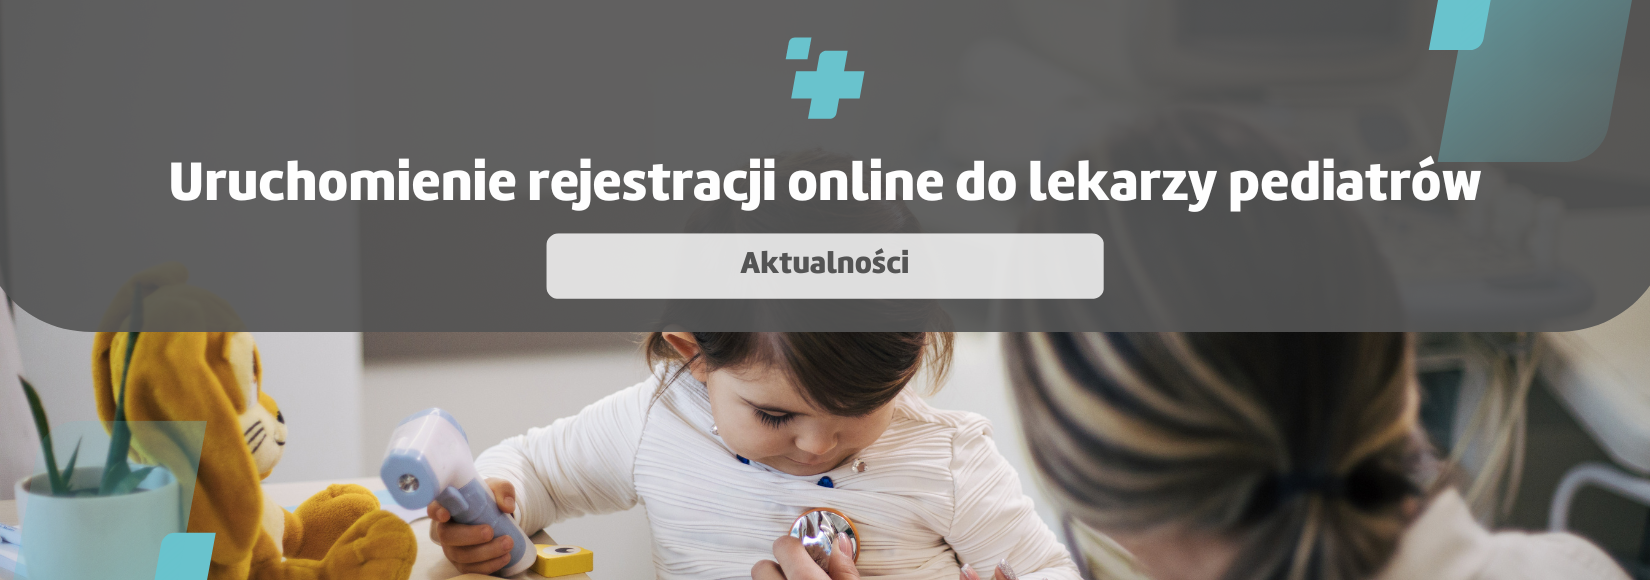 Rejestracji online do lekarzy pediatrów w CenterMed